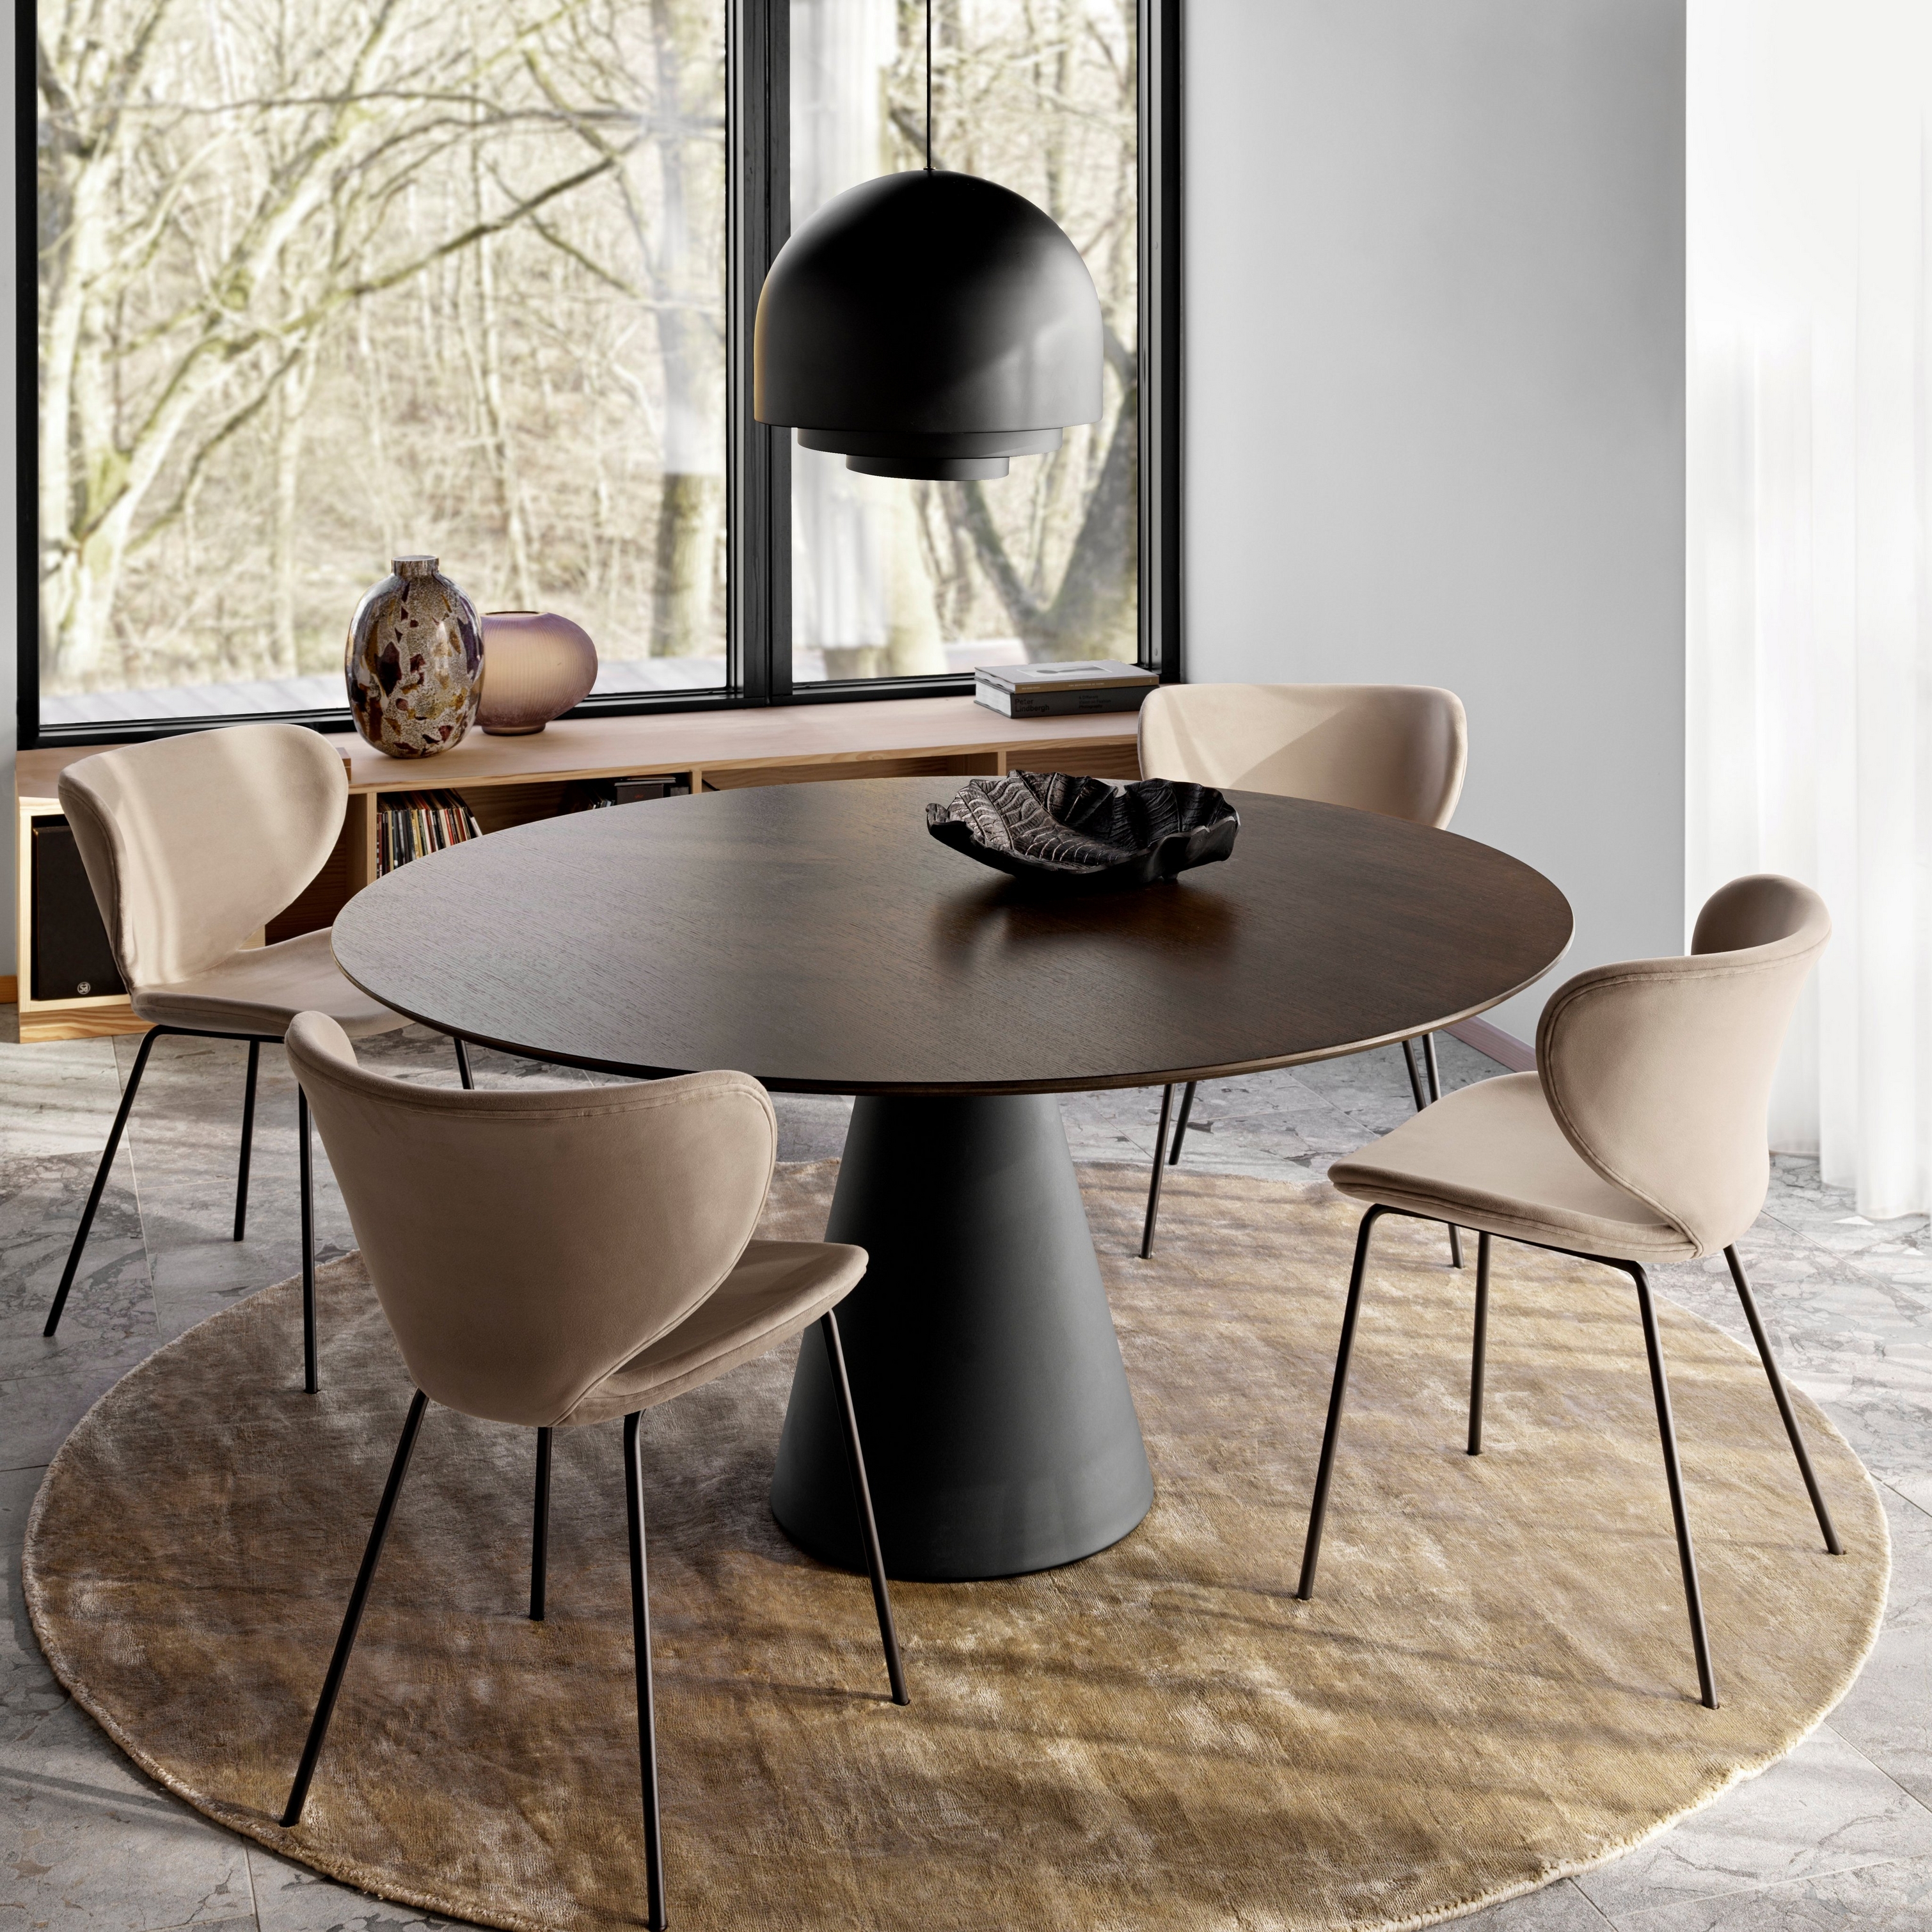 Runt matbord med bruna stolar på en rund matta nära fönster som sträcker sig från golv till tak, och en stor taklampa